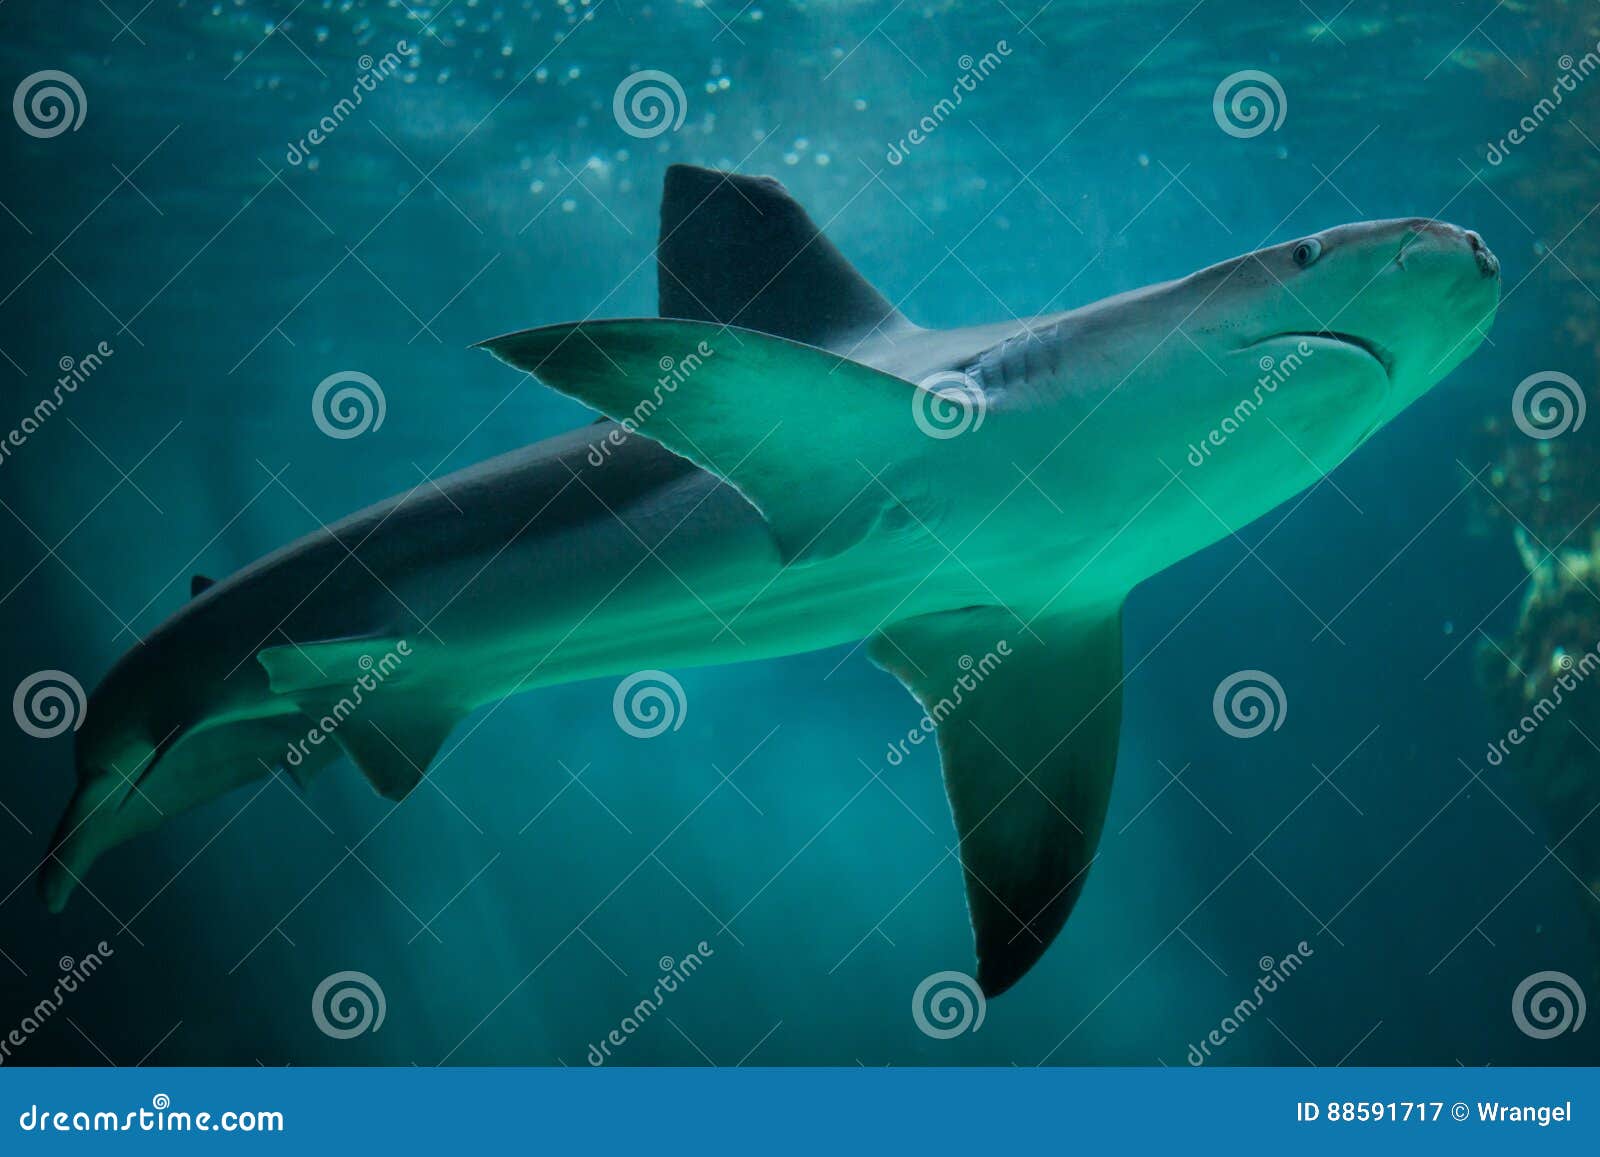 sandbar shark carcharhinus plumbeus.